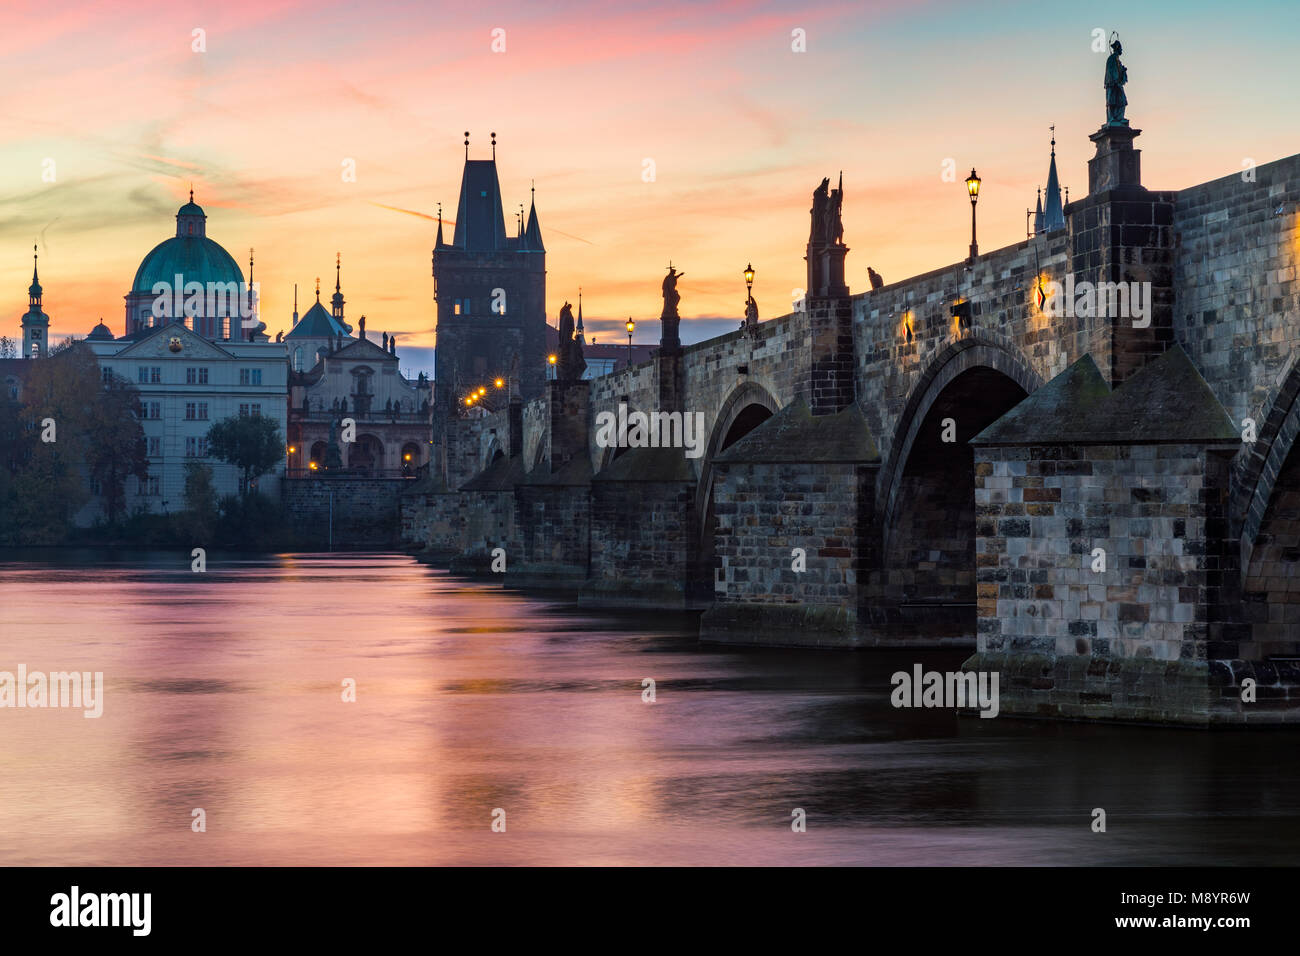 Berühmte ikonische Bild von der Karlsbrücke, Prag, Tschechische Republik. Konzept der Welt reisen, Sehenswürdigkeiten und Tourismus. Stockfoto